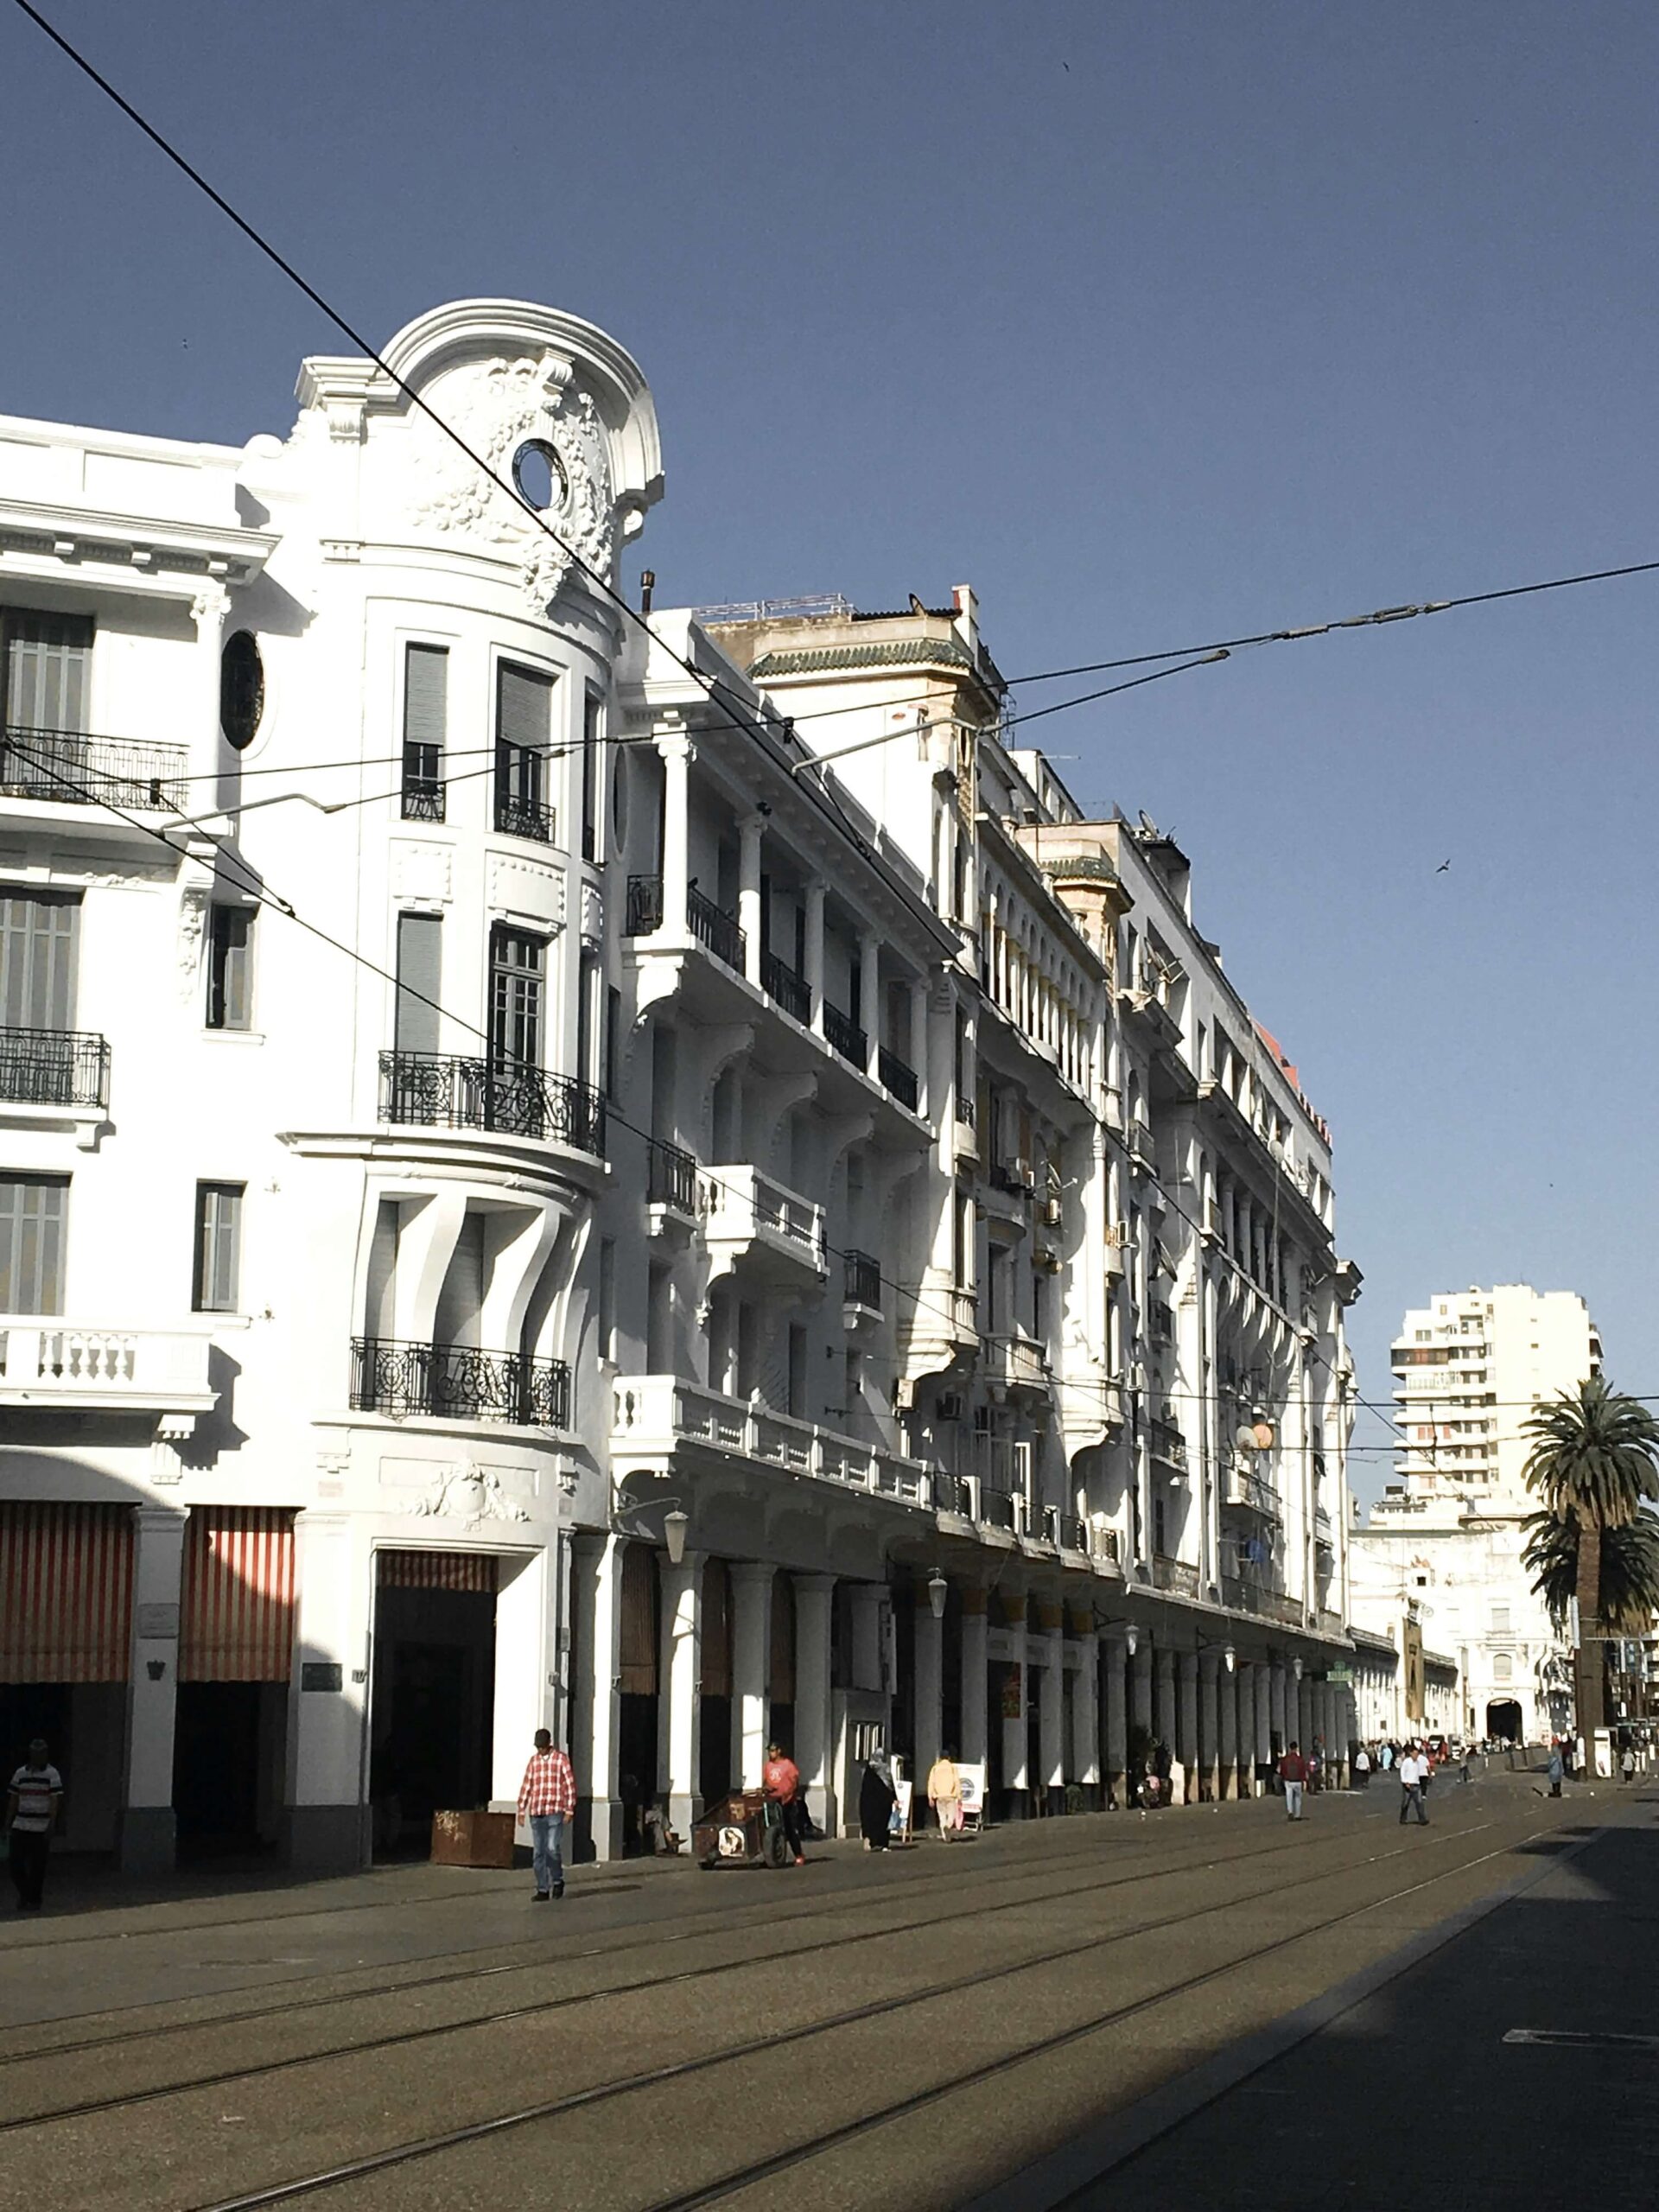 Boulevard Mohammad V in Casablanca